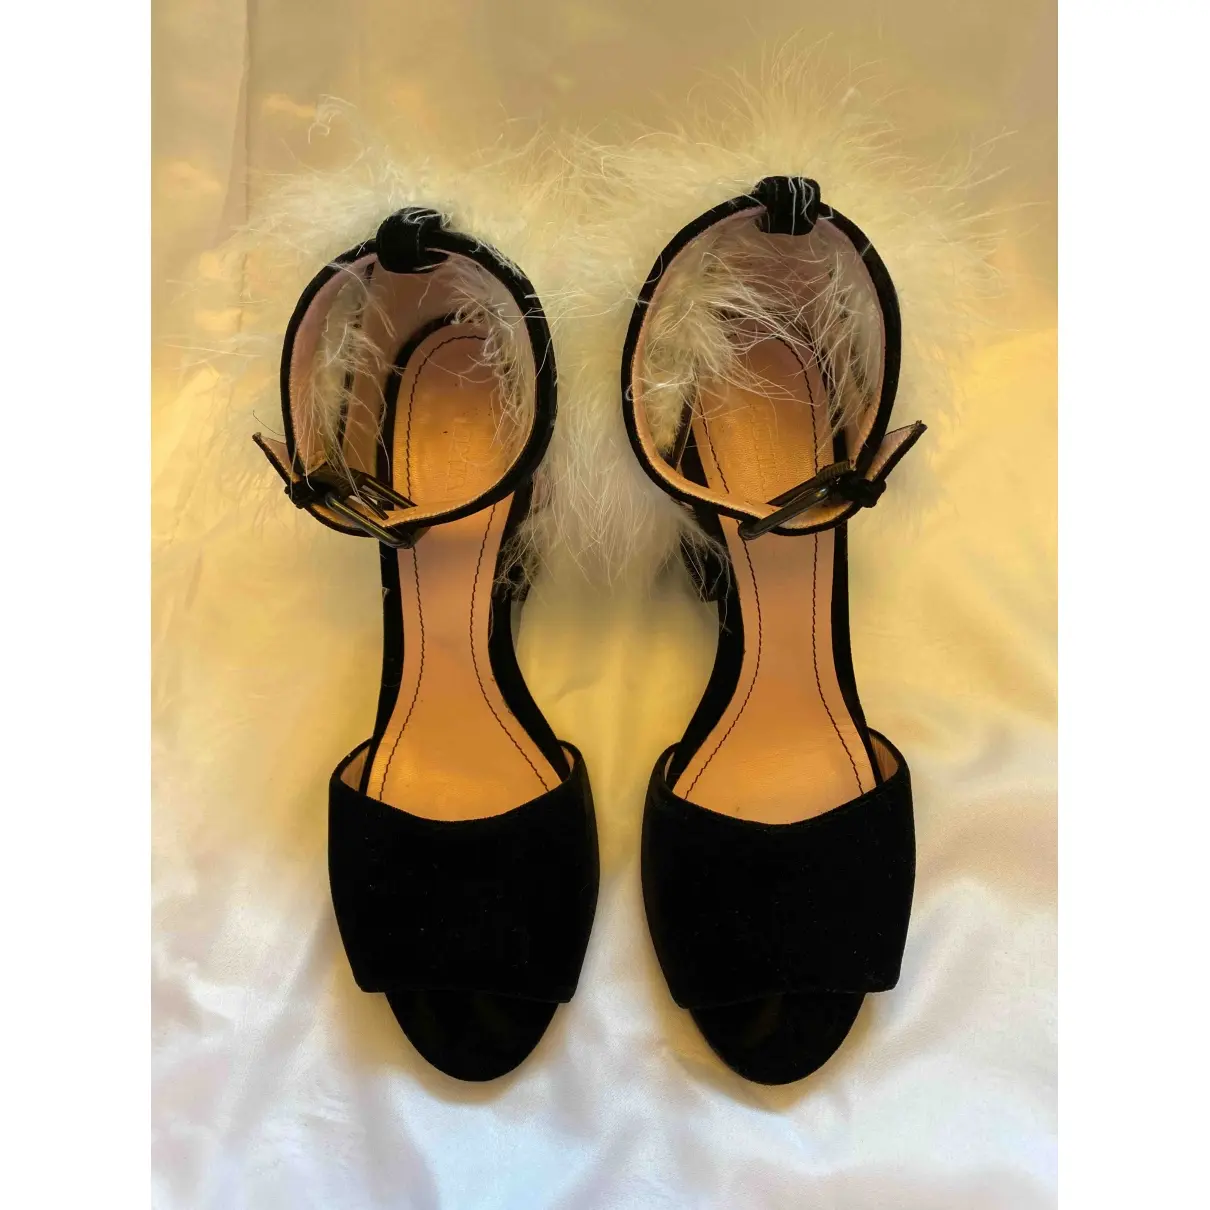 Sonia Rykiel Velvet sandals for sale - Vintage